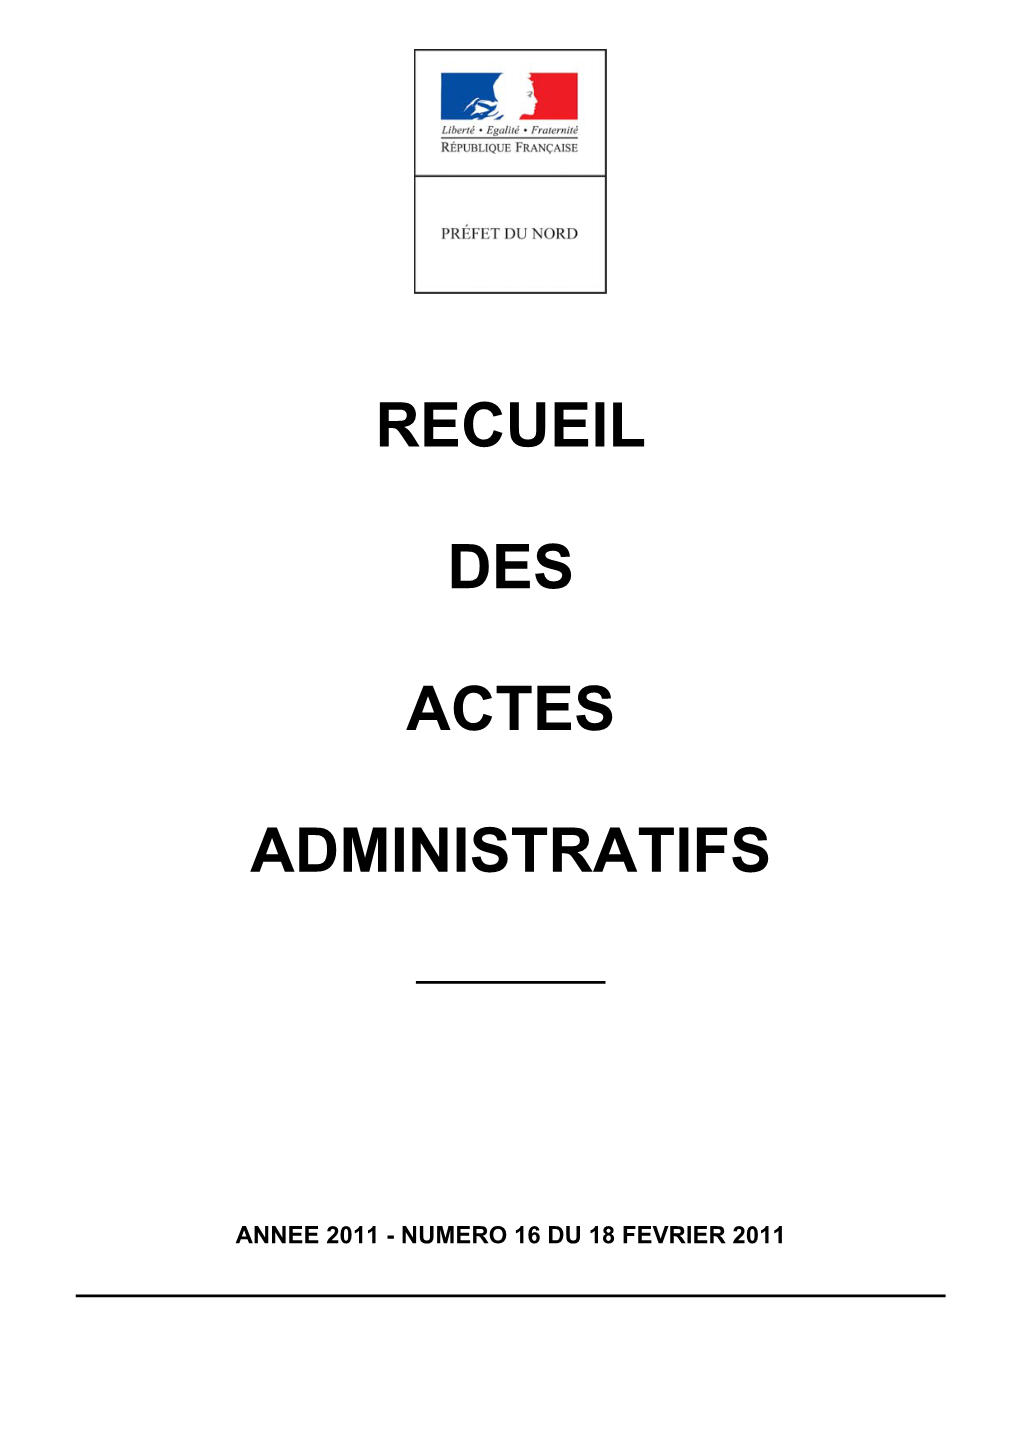 Recueil Des Actes Administratifs De La Préfecture Du Nord Année 2011 - N° 16